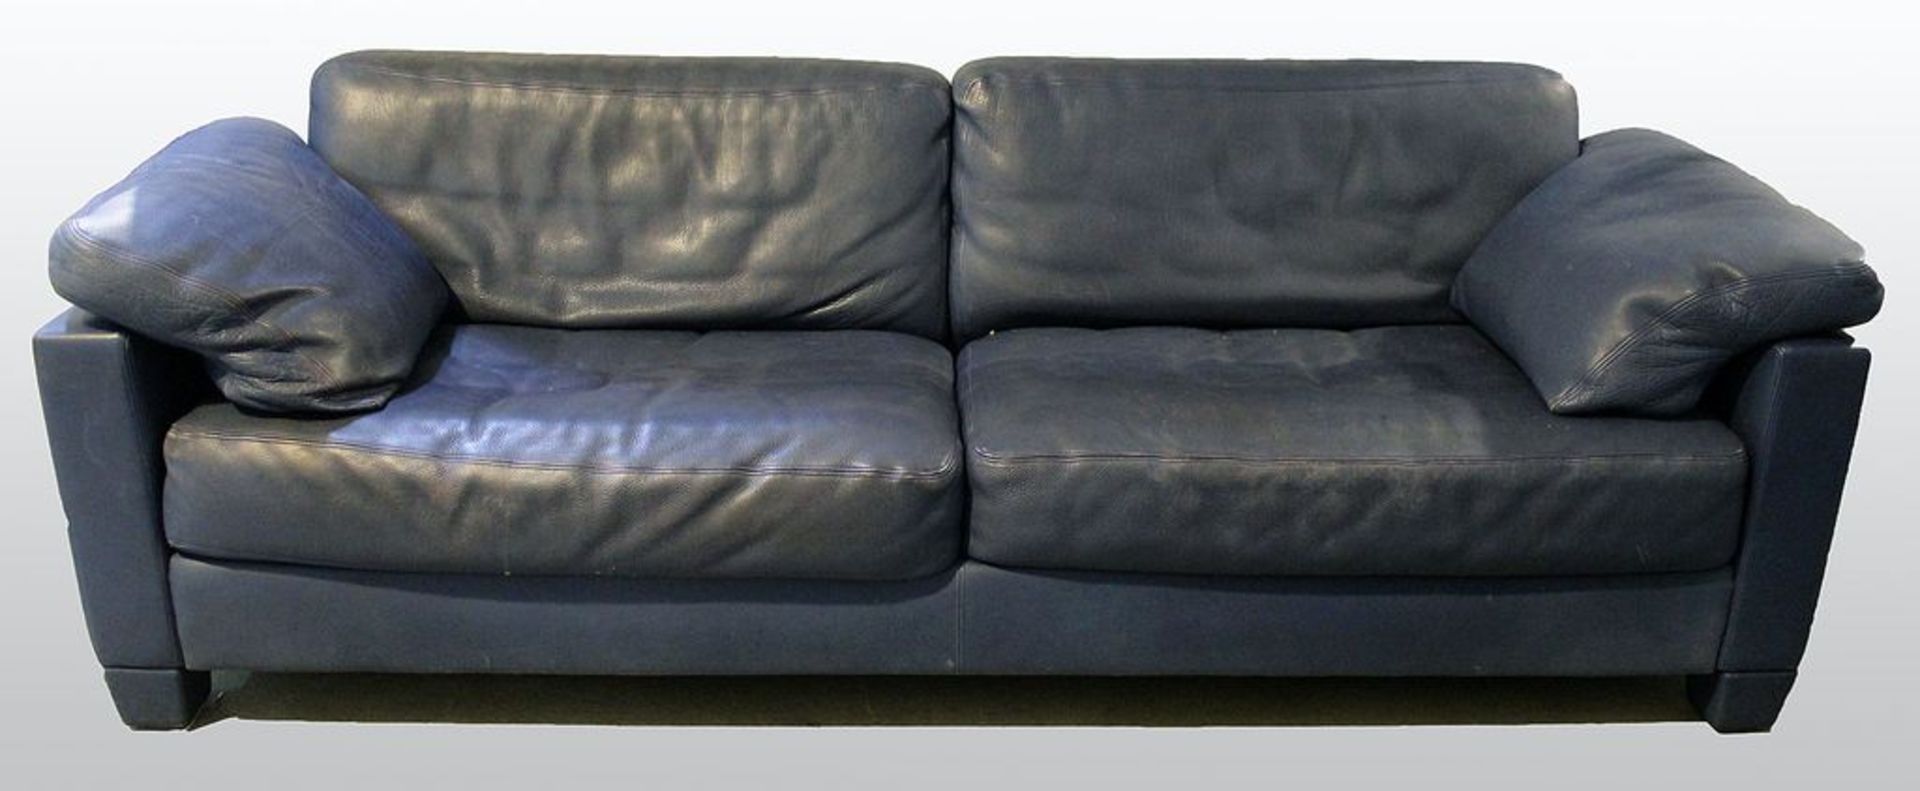 Modernes Sofa, deSede, 3-Sitzer. Blaues Leder mit Nähten. Alters- und Gebrauchsspuren